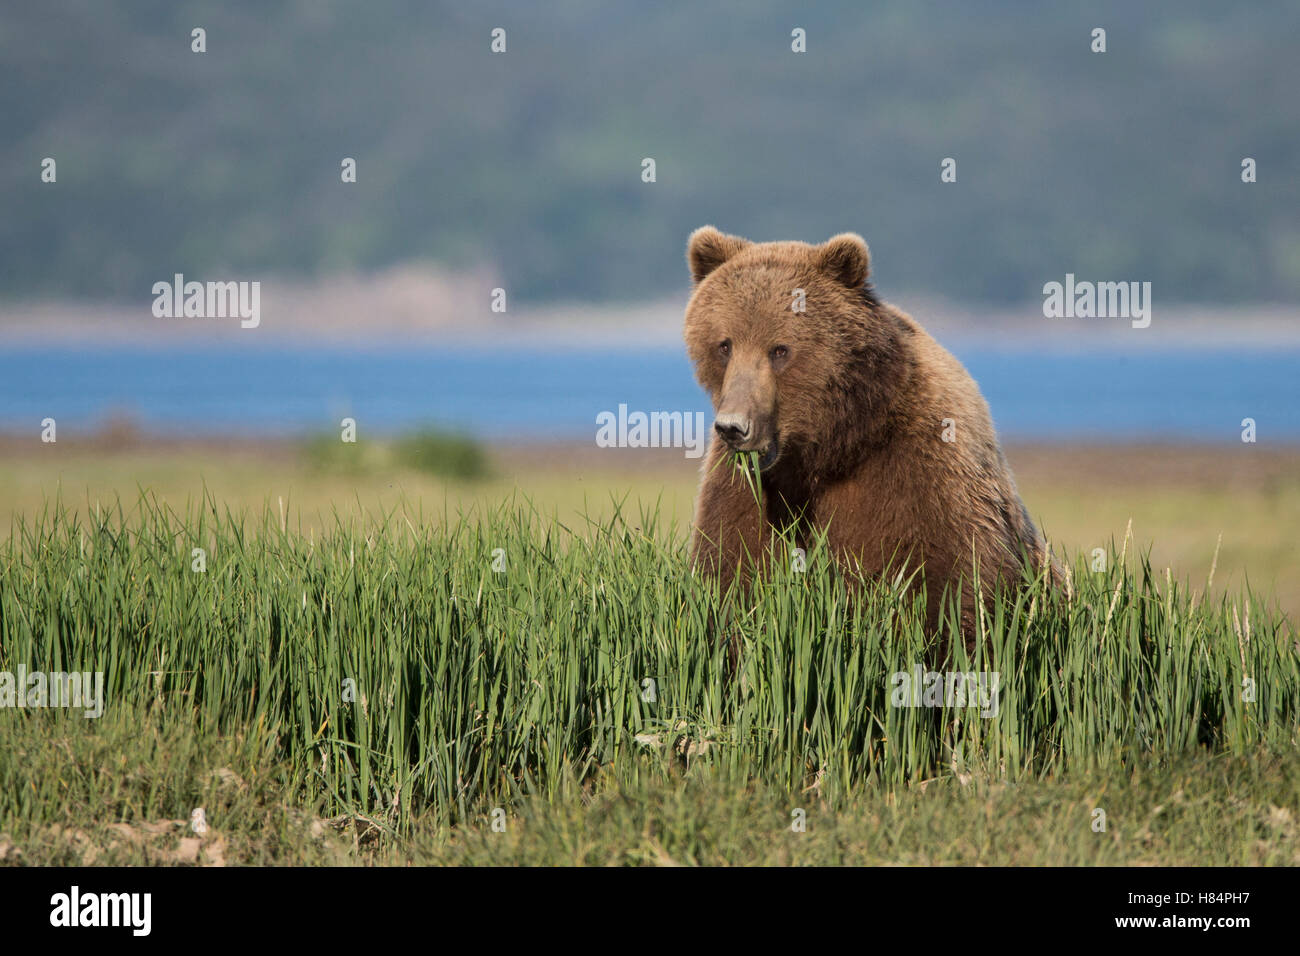 Brown Bear (Ursus arctos) eating sedge grass, Katmai National Park, Alaska Stock Photo